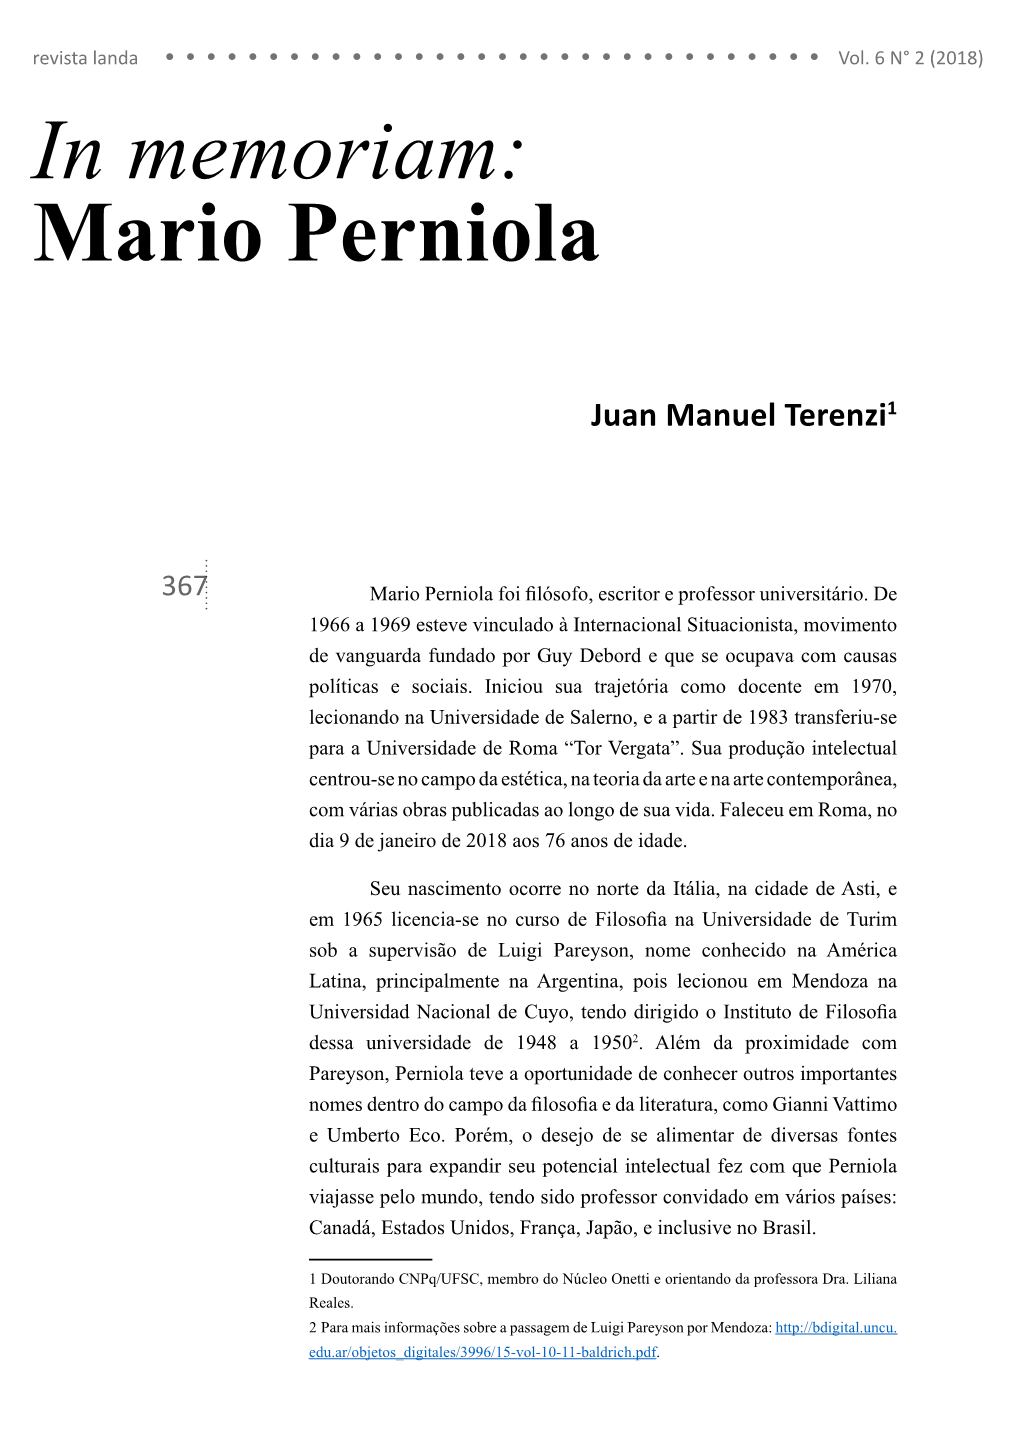 In Memoriam: Mario Perniola